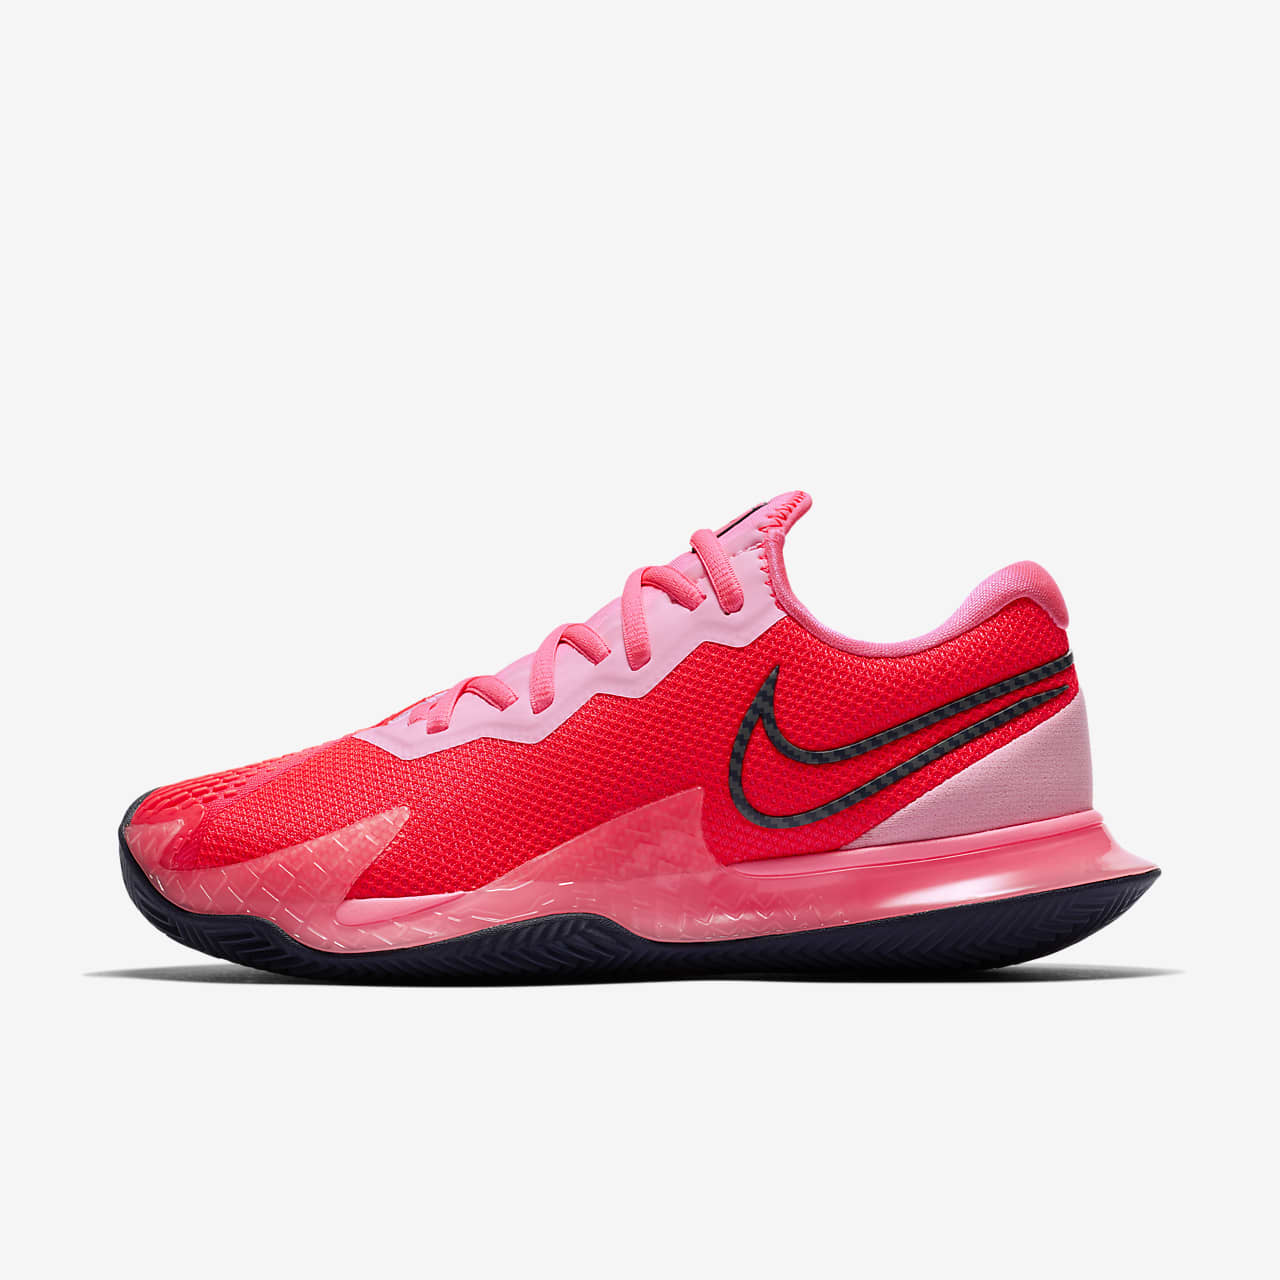 Clay Court Tennis Shoe. Nike LU